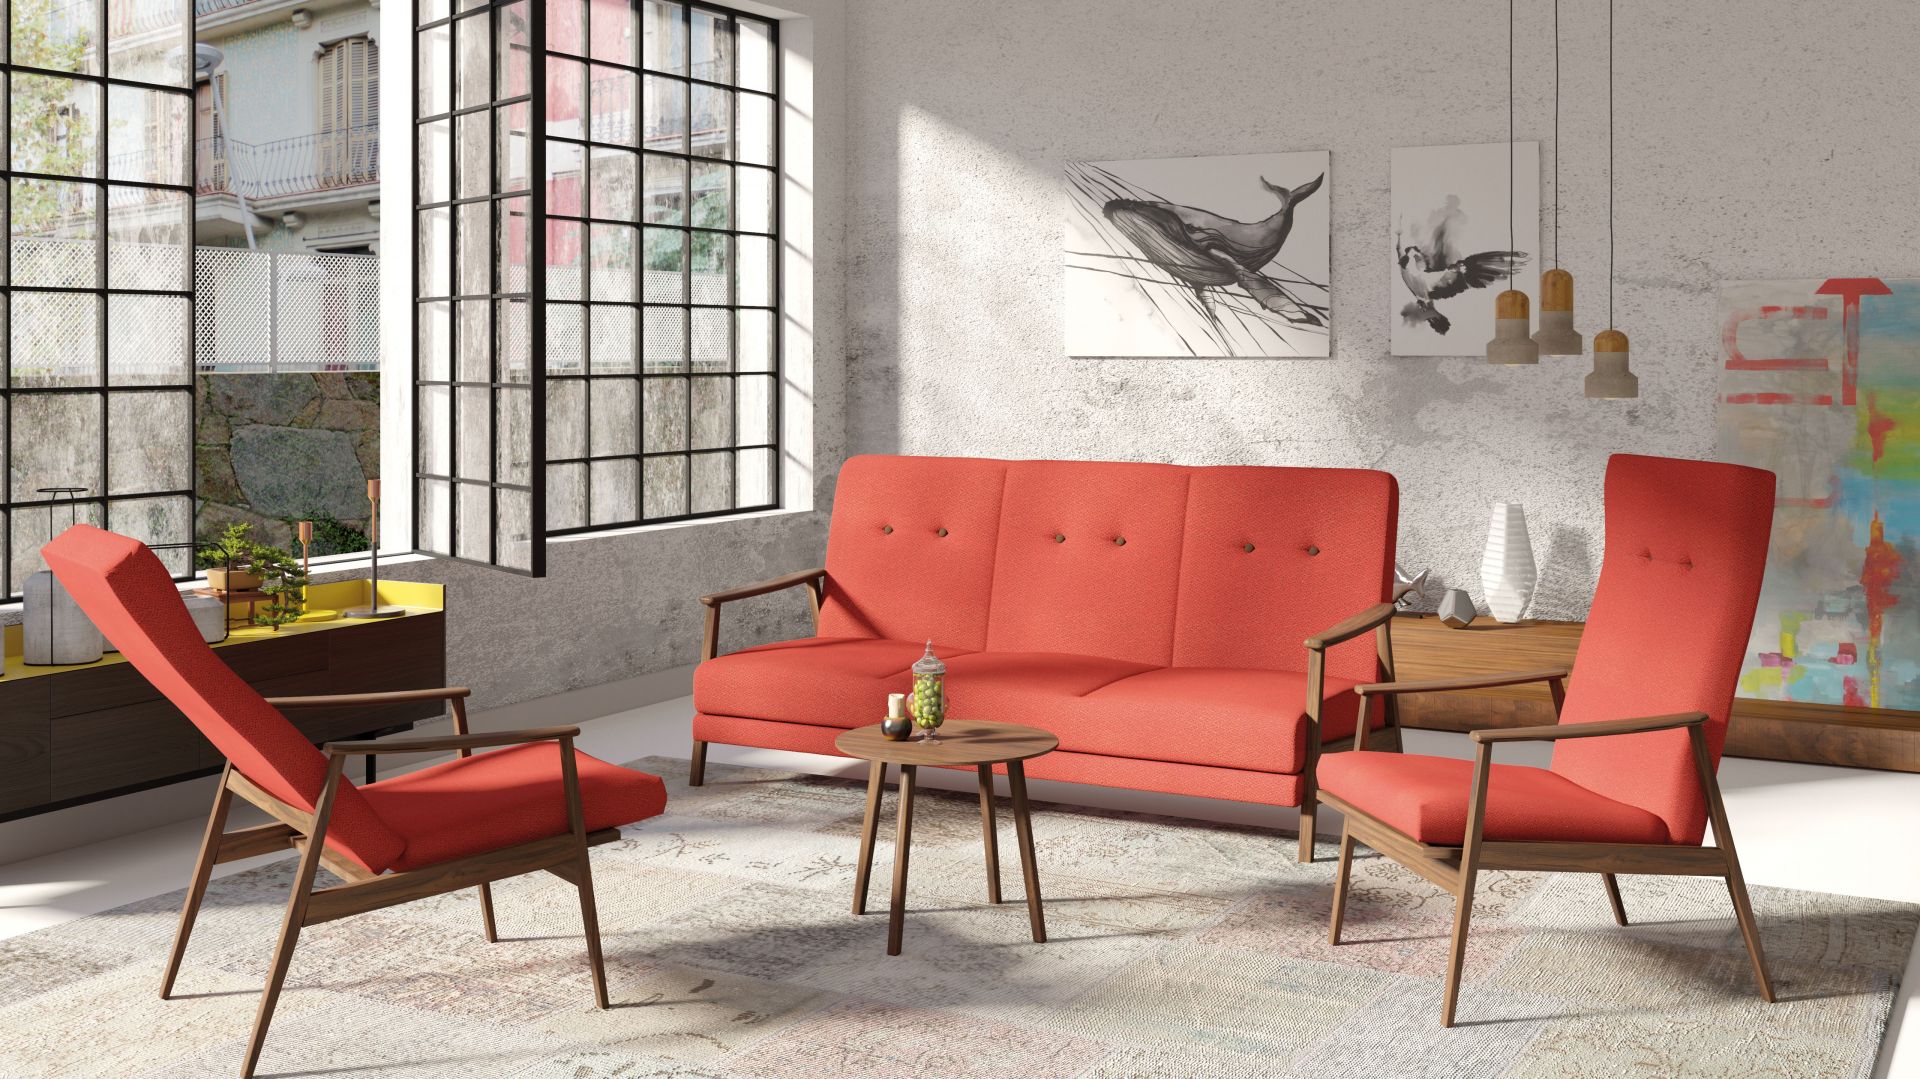 Sofy i fotele inspirowane latami 60. - wybierz styl retro